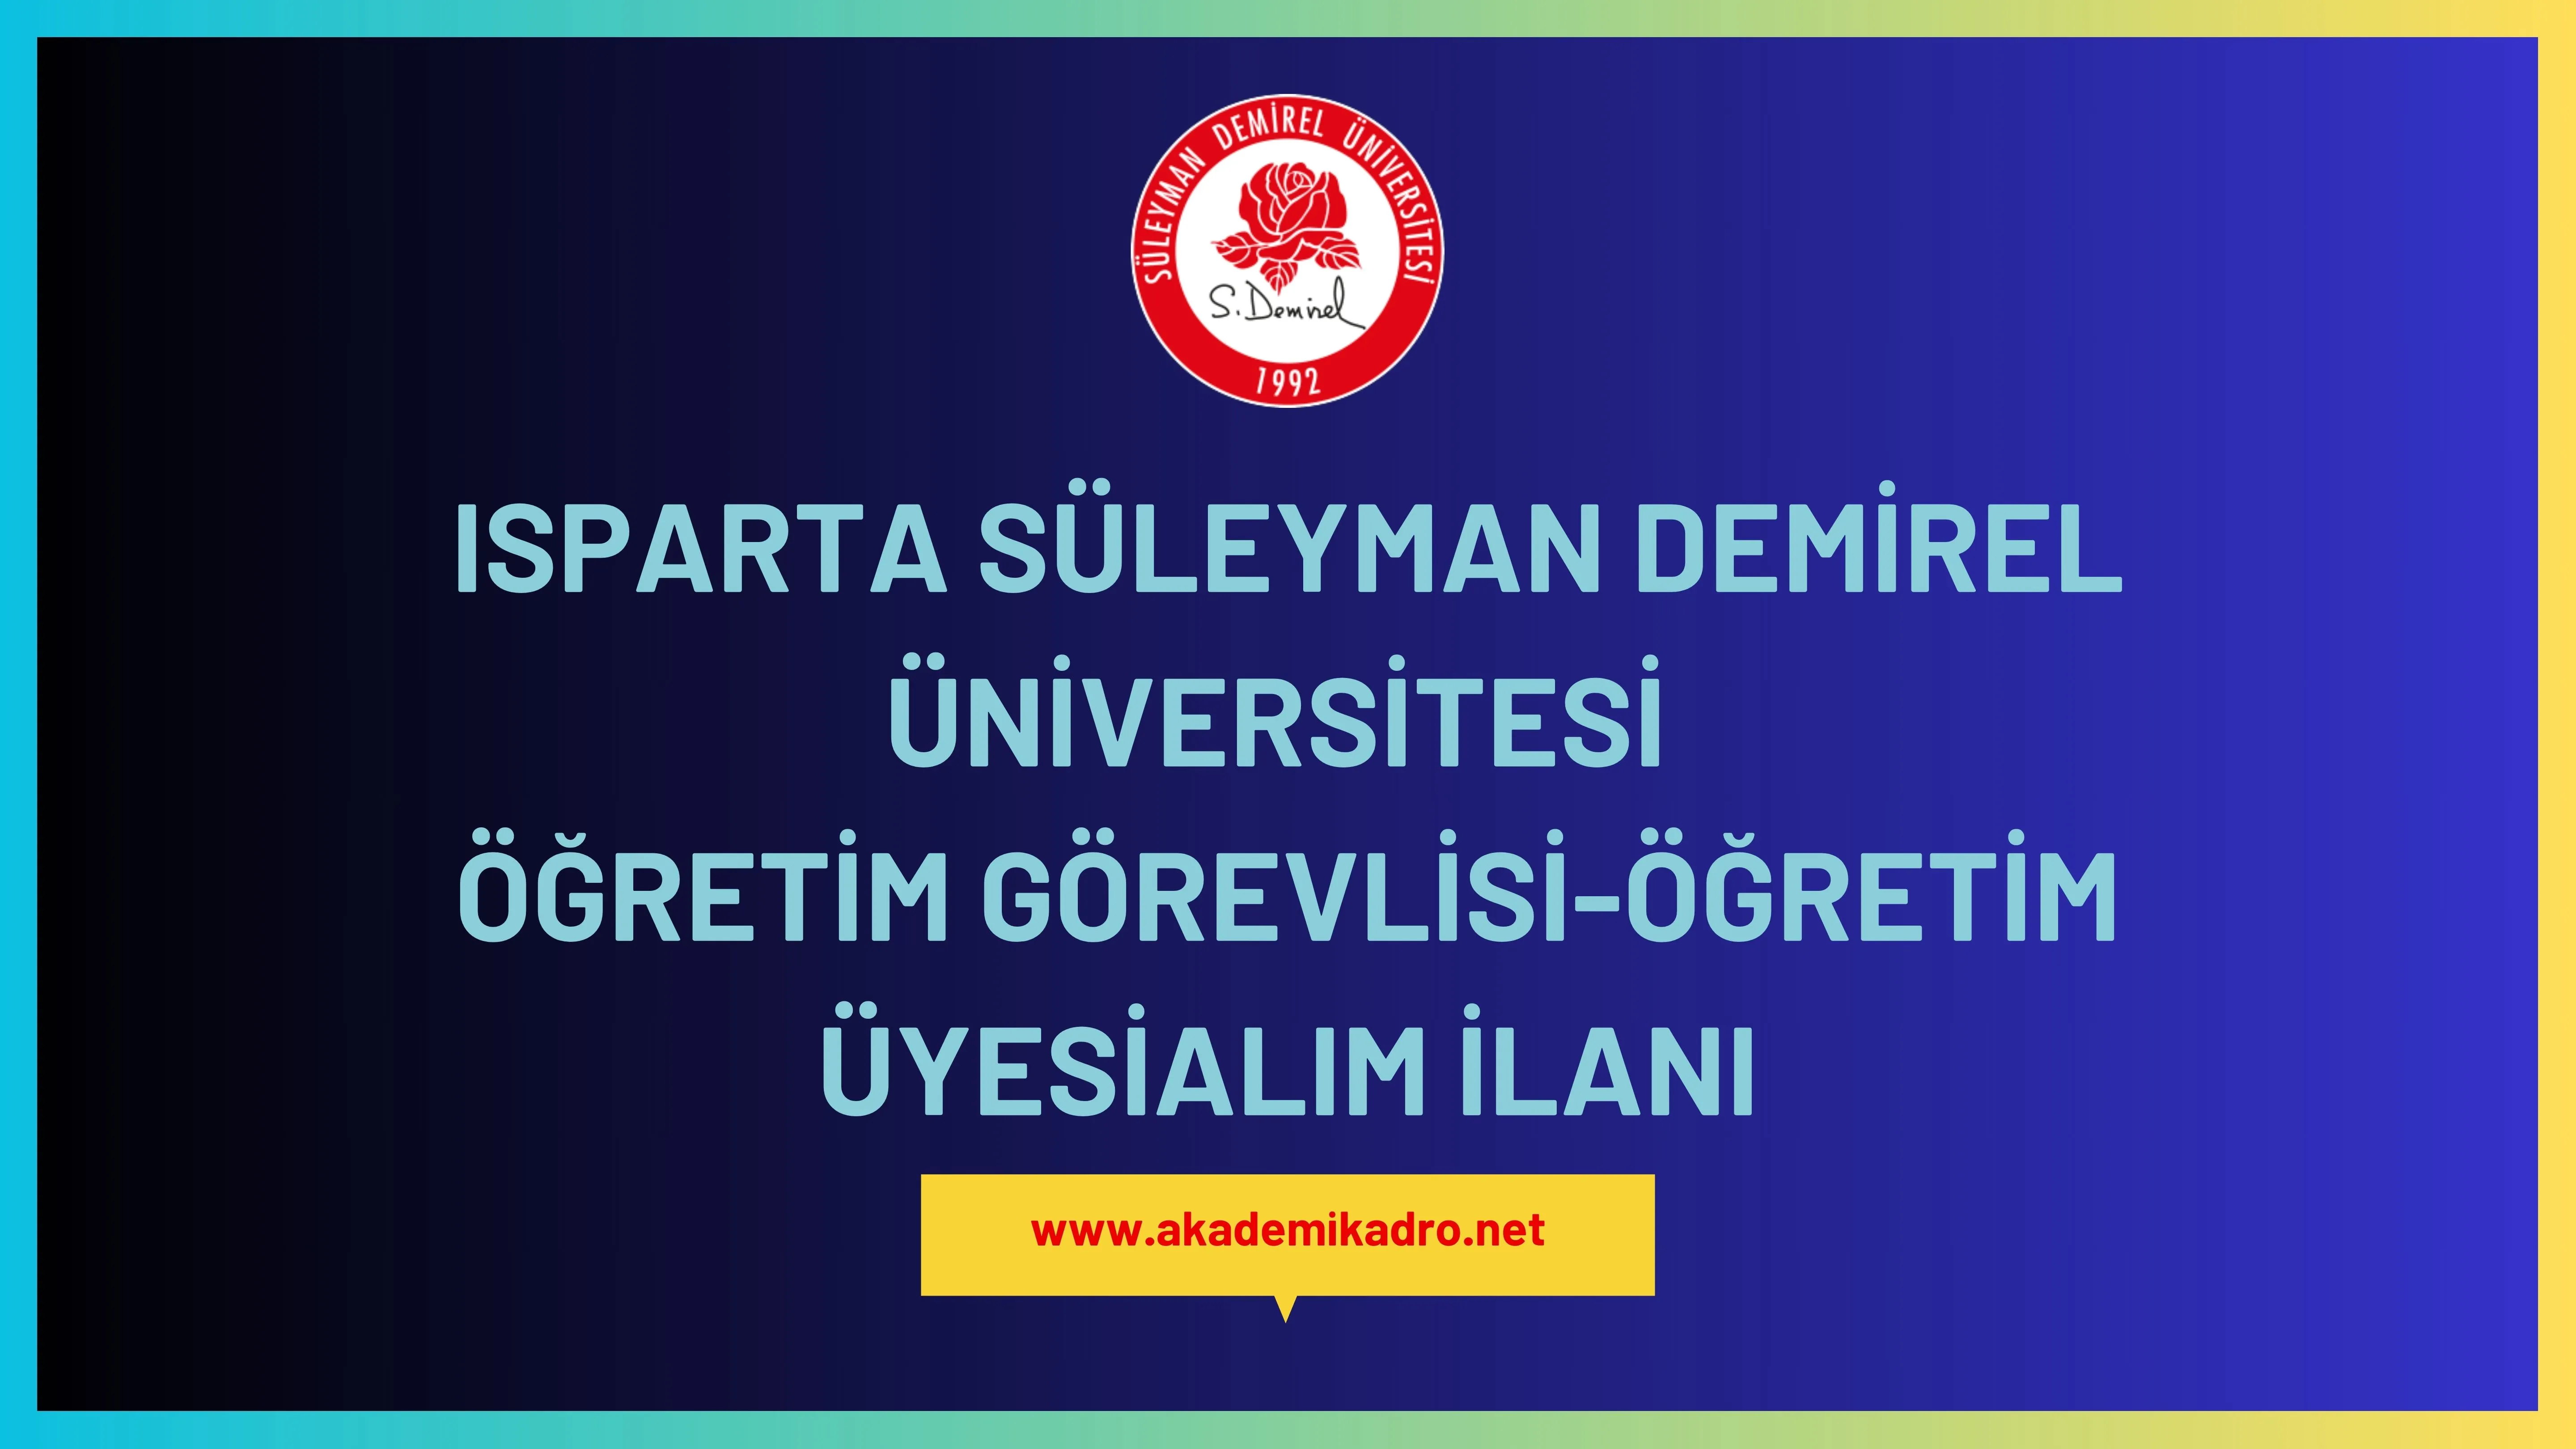 Süleyman Demirel Üniversitesi 2 öğretim görevlisi alacaktır.